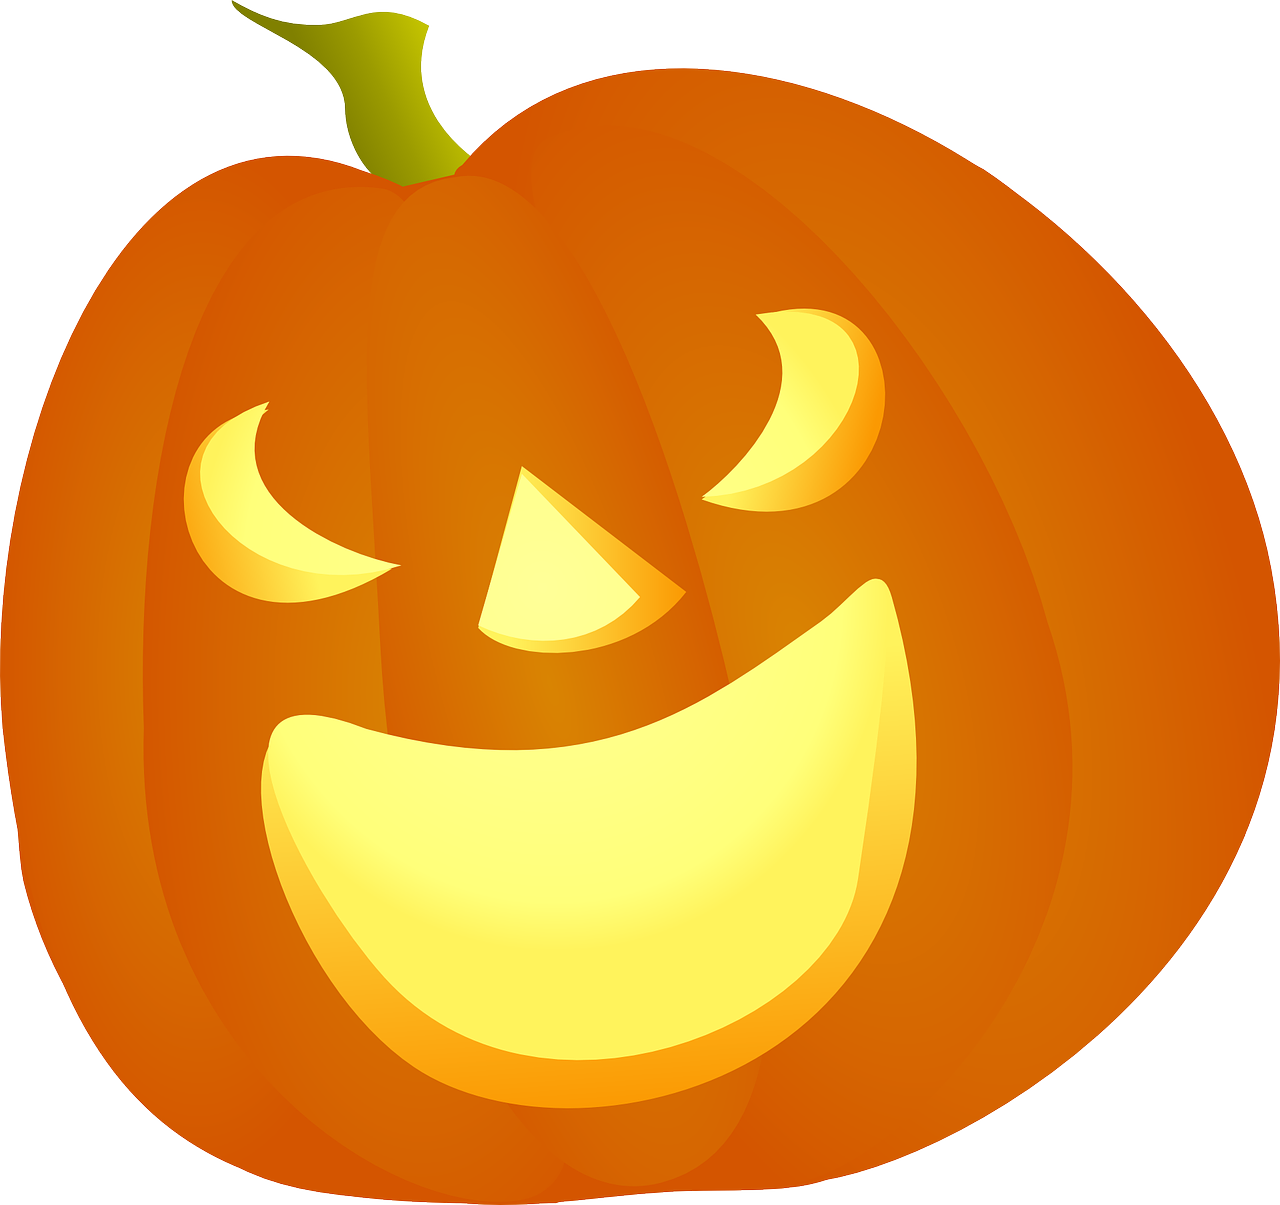 Jack-O’-Lantern Carved Pumpkin Download PNG Image